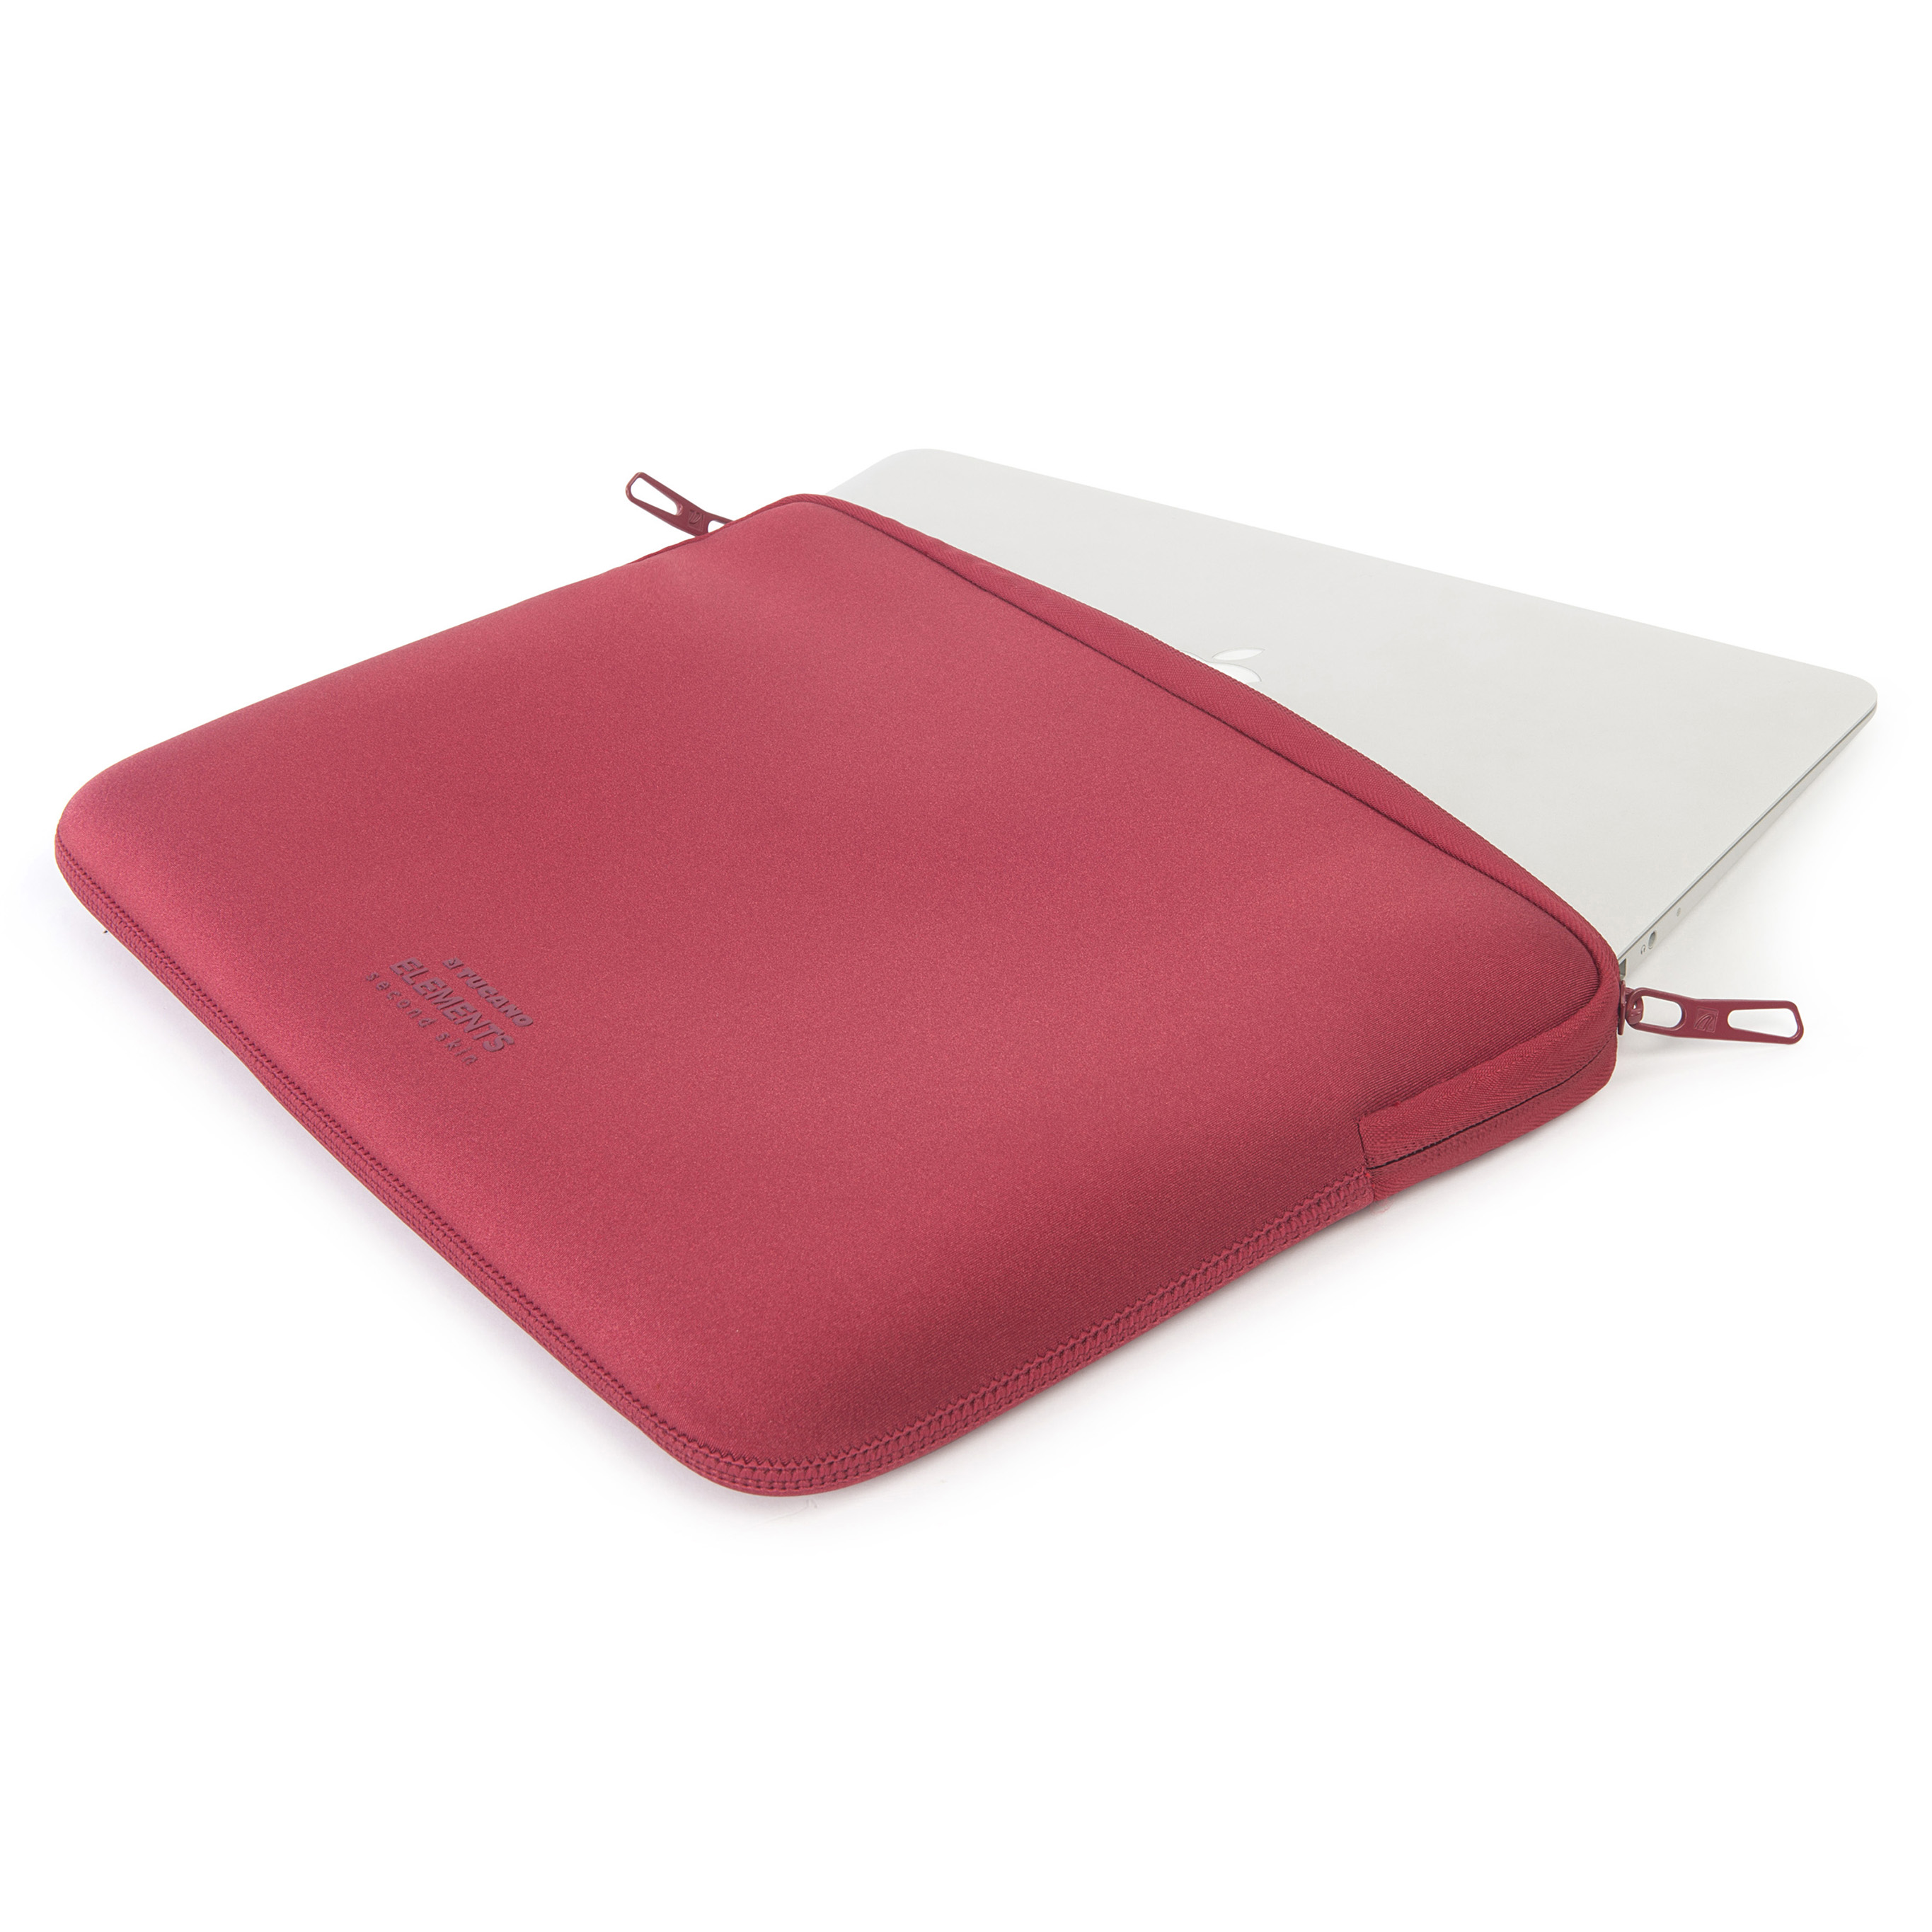 Tucano Second Skin New Elements Neopren Hülle für MacBook Air 13 Zoll, Red